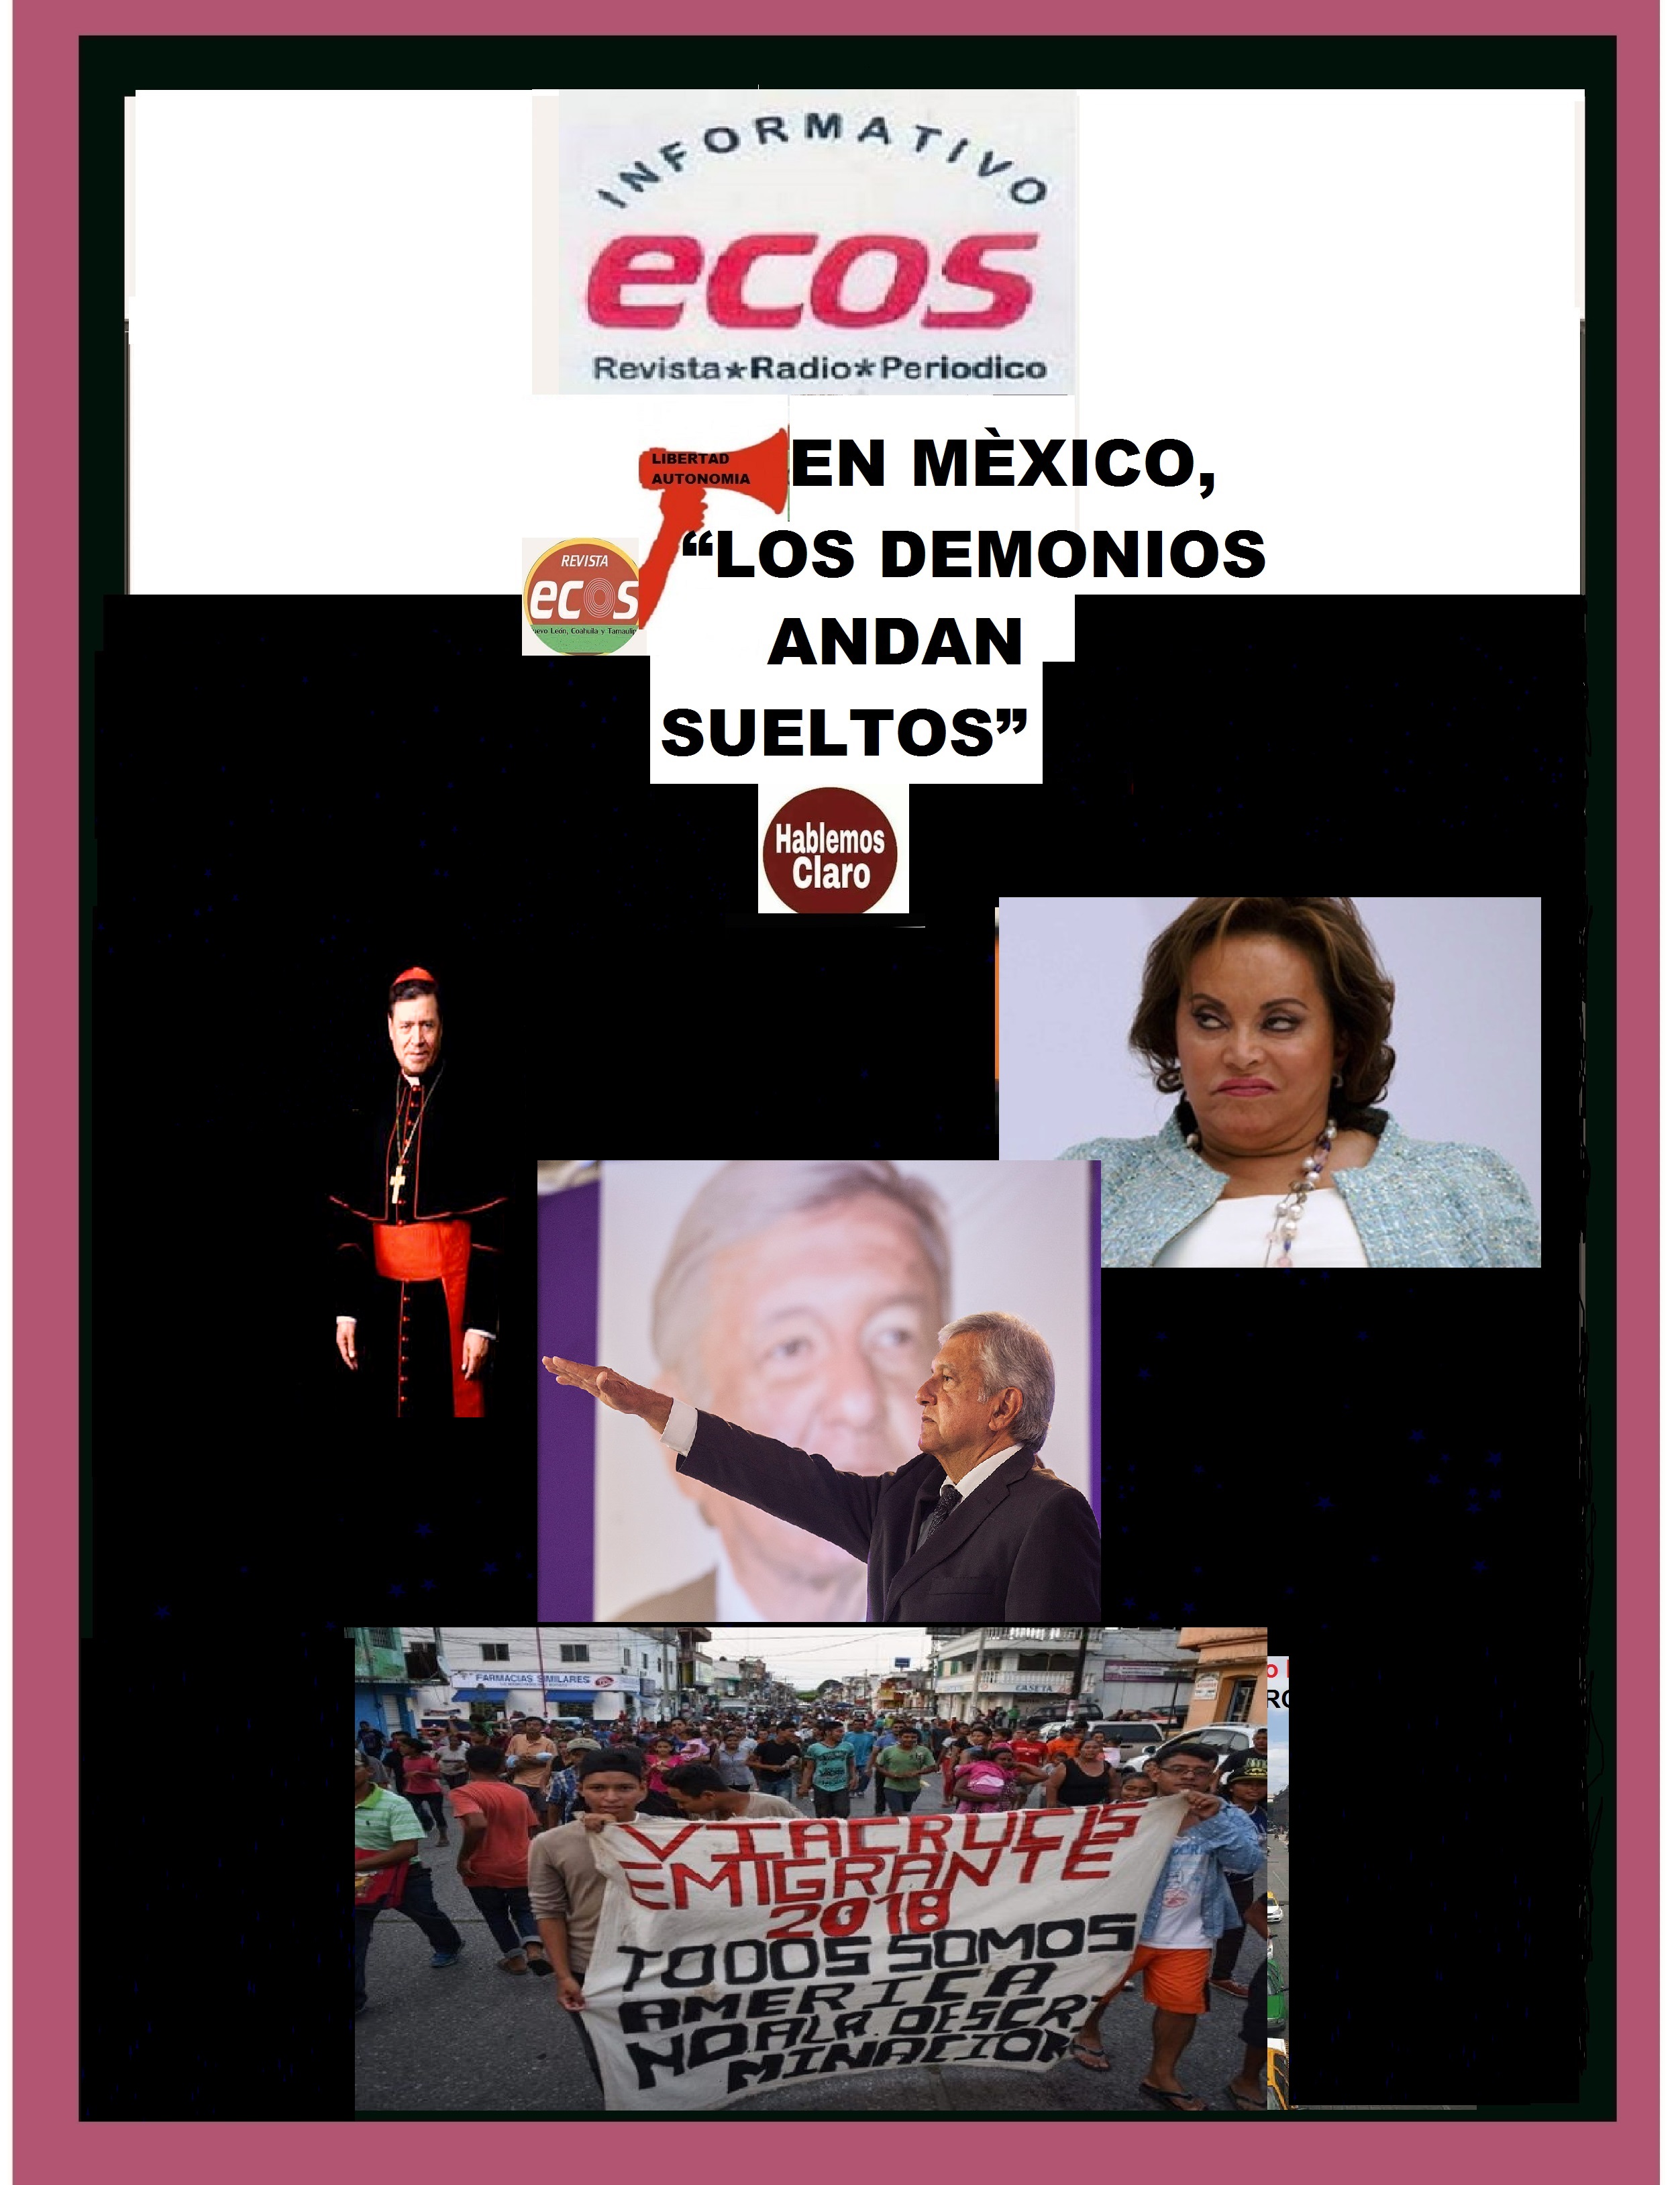 En Mexico "LOS DEMONIOS ANDAN SUELTOS"